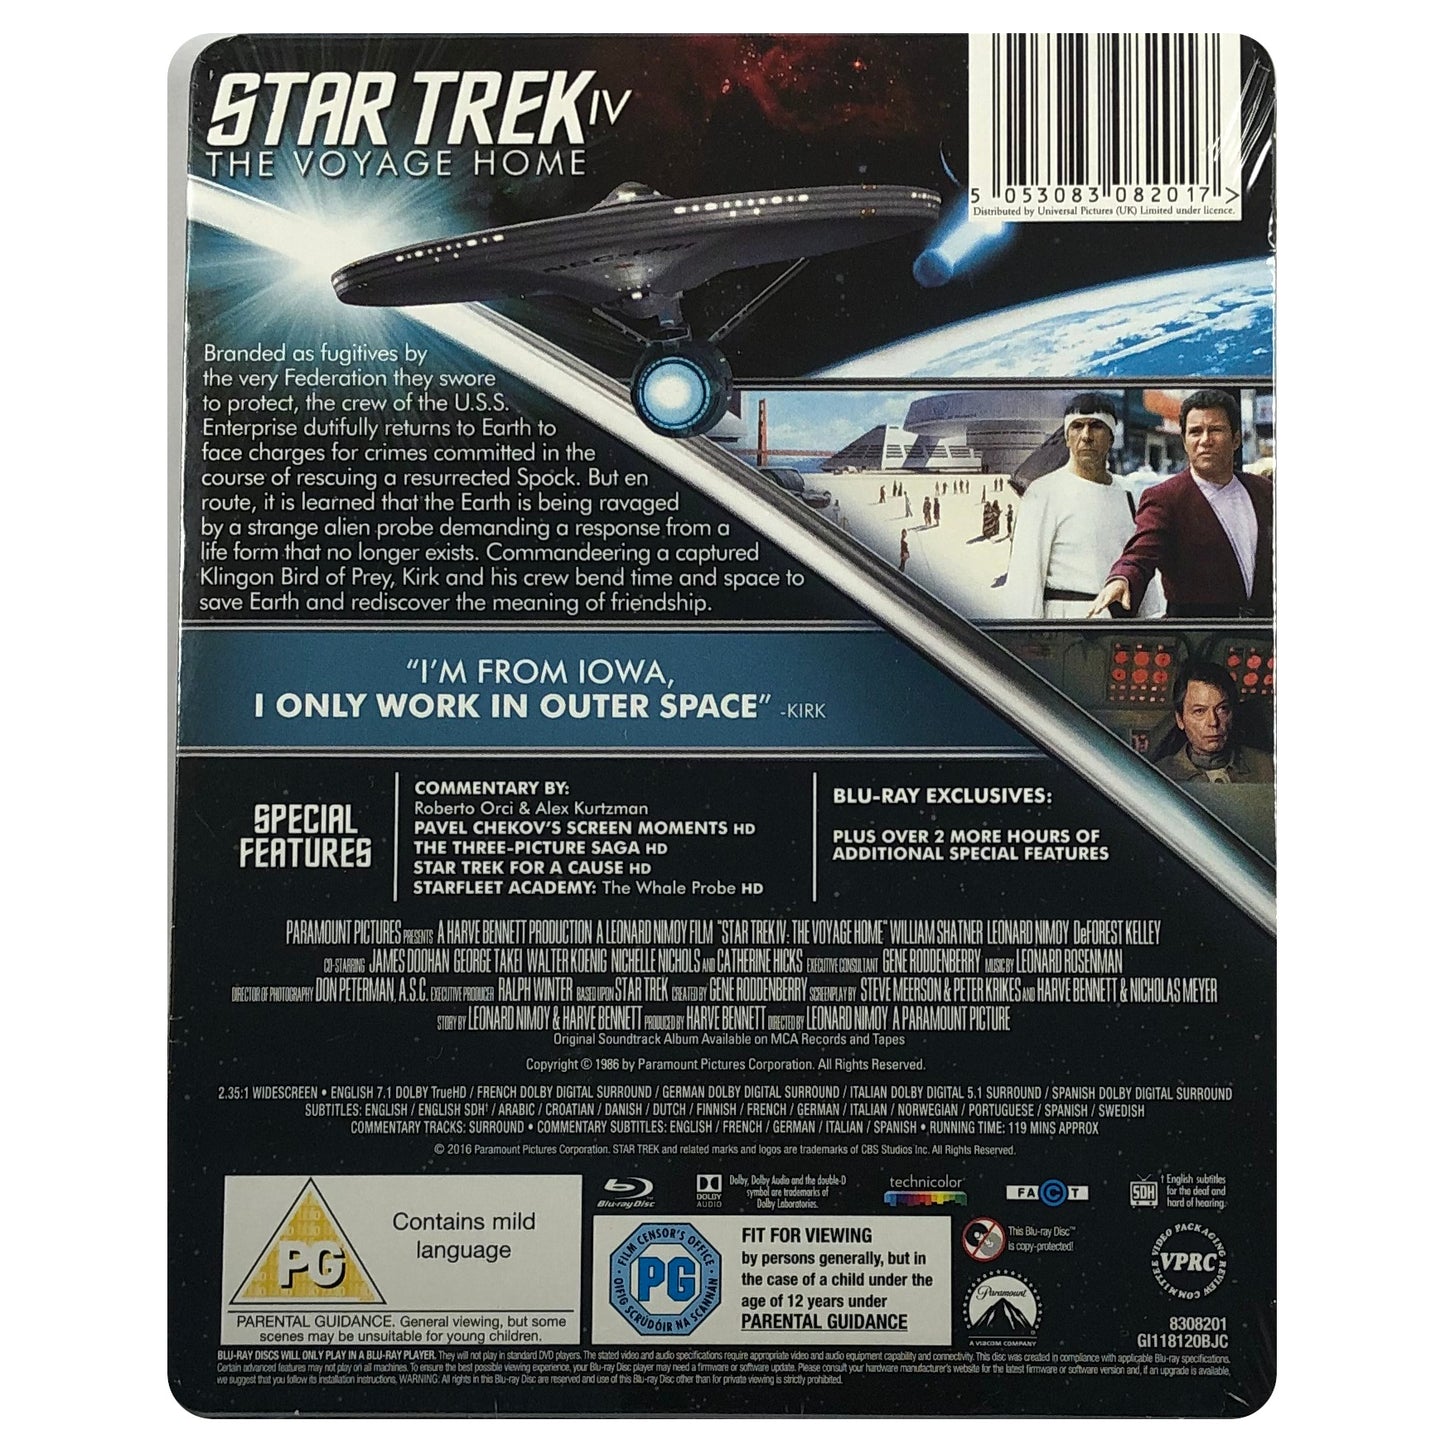 Star Trek IV: The Voyage Home Blu-Ray Steelbook